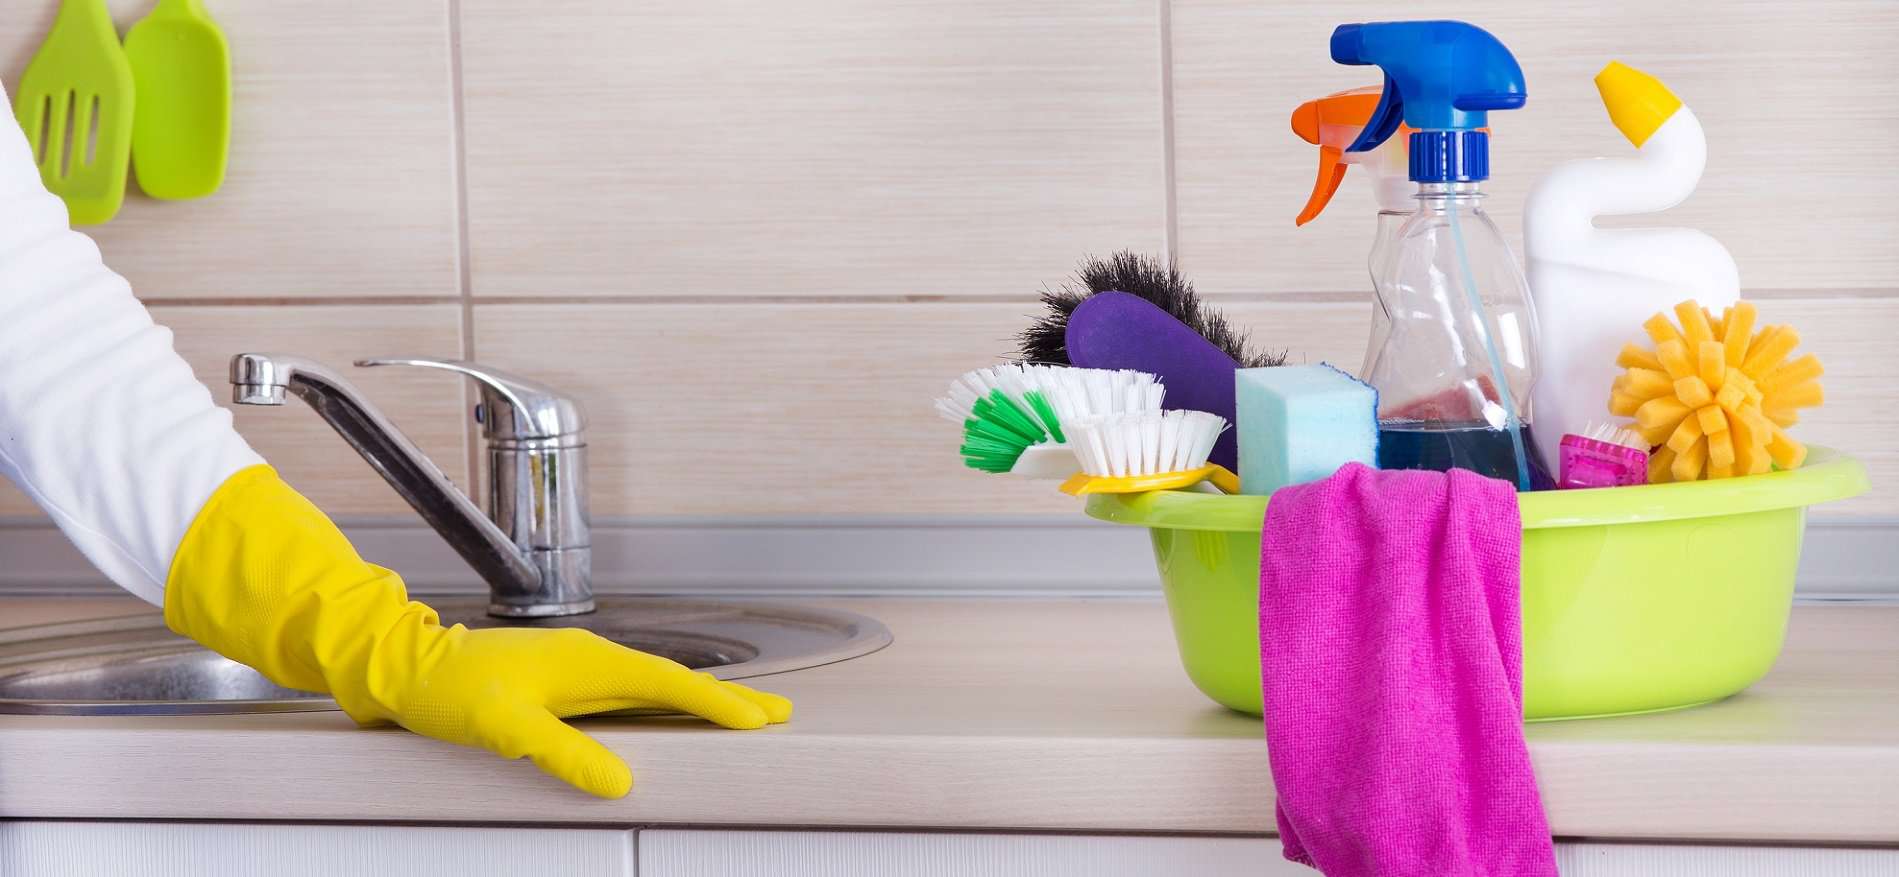 تنظيف شفاط المطبخ